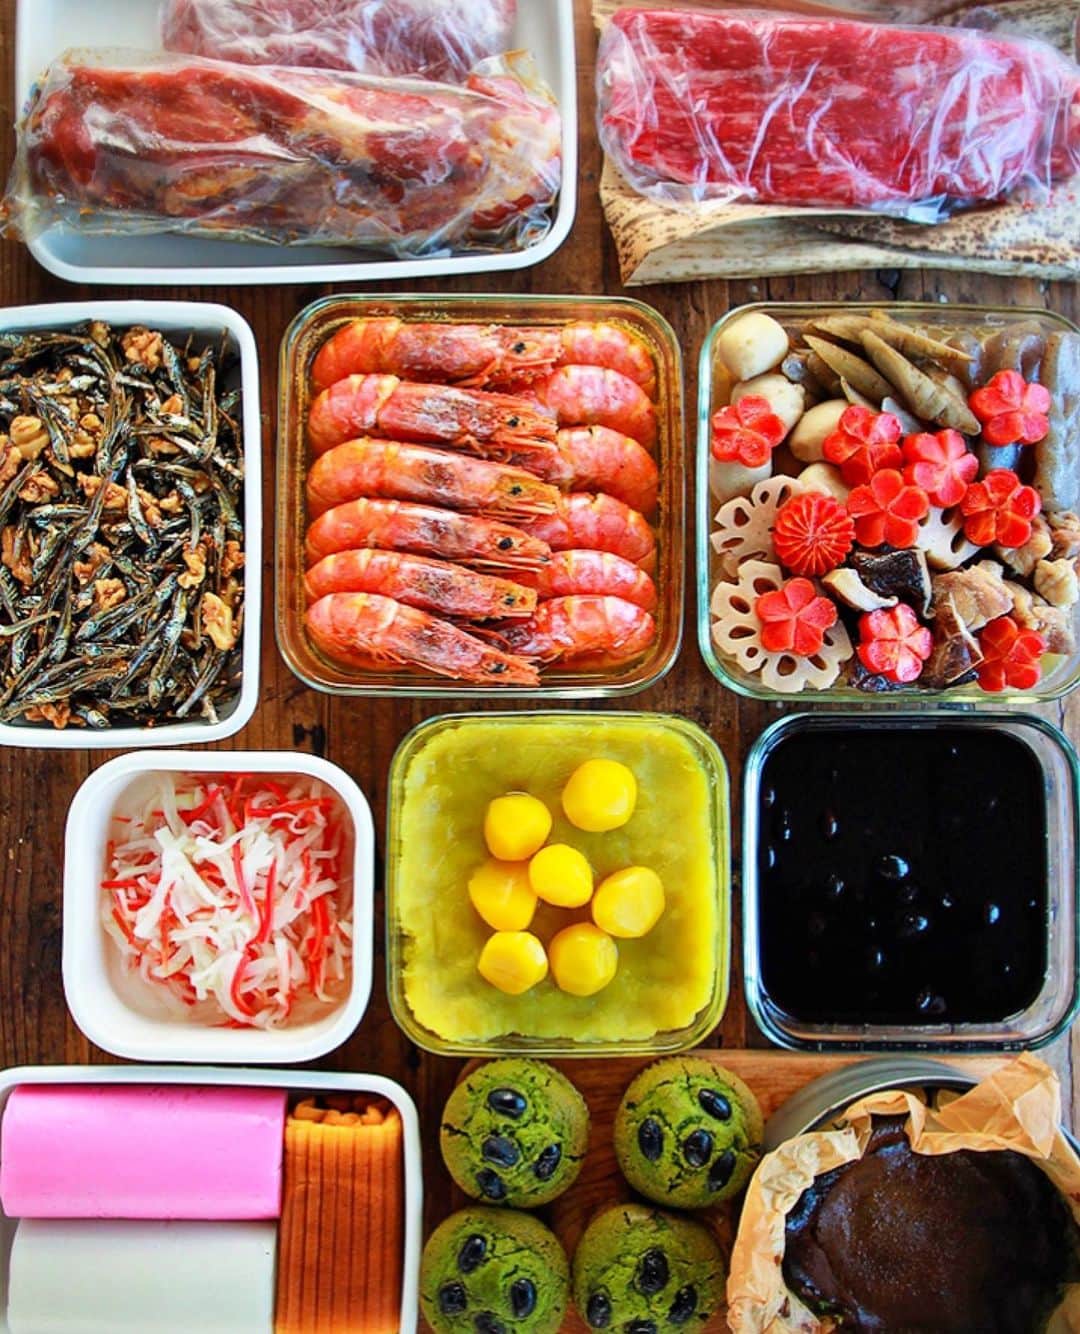 Mizuki【料理ブロガー・簡単レシピ】さんのインスタグラム写真 - (Mizuki【料理ブロガー・簡単レシピ】Instagram)「・﻿ ーーーーーーーーーーーーーーーー﻿ 今年もありがとうございました☺️﻿ ーーーーーーーーーーーーーーーー﻿ ﻿ ﻿ ﻿ いよいよ2020年最終日ですね〜✨﻿ お正月準備はすすんでいますか？﻿ ﻿ ﻿ 今年は大変な状況が続き﻿ 大きな変化を感じた年でしたね💦﻿ ﻿ 緊急事態宣言が出たり﻿ 学校も休みになったり﻿ 在宅ワークになったり。﻿ おうちで過ごす時間が増える中で﻿ 難しいことが出てきたり﻿ 逆にいいこともあったり。﻿ とにかく普段とは違う時間•••﻿ ﻿ ﻿ 私はこんな仕事をしているからか﻿ この間は特に''ごはん''に関する声が﻿ 多く聞こえてきましたし﻿ ［#おうちごはん ］というハッシュタグも﻿ 見ない日はないくらいでした💦﻿ ﻿ そこで、ほんと微力ですが•••﻿ 使えそうなレシピとか﻿ おやつ的なレシピに重点を置いて﻿ ご紹介させていただきまして。﻿ 大変な中ではありましたが﻿ 皆さんとの繋がりは﻿ 一層強くなったような気がしています！﻿ ﻿ まだ安心できない状況が続いていますが﻿ とりあえずは今日という今年最後の日に﻿ 一旦お疲れ様でしたと﻿ それぞれに労いたいですね(*^^*)﻿ そしてこんな状況でも﻿ 頑張って下さっている方々に感謝し﻿ 一刻も早い終息を願います✨﻿ ﻿ 来年はきっといい年になりますように！﻿ ﻿ ﻿ ﻿ ﻿ ﻿ さて、毎年恒例の個人的な抱負ですが•••﻿ 2021年も ［このままで］﻿ ﻿ 几帳面な割に雑で﻿ 拘りが強いくせにどうでもいいことが多い。﻿ 丁寧な暮らしはできなくても﻿ 普通に過ごせたらじゅうぶんで﻿ 普通に起きて、食べて、働いて、寝る。﻿ 来年もこれができたらいいな〜。﻿ 今年はまだ仕事納めできてないけれど(笑)﻿ これはこれで本当に有難いことだと思っています！﻿ ﻿ 料理に関しては肩肘はらず﻿ 普通のおいしいものを作りたい。﻿ どれも似たり寄ったりで﻿ 『あれ、これ作ったことあるな•••』﻿ なんて思いながらも﻿ また同じレシピを作ってしまう😅﻿ 皆さんには申し訳ないなと思いつつ﻿ 変わらない普遍的なものを﻿ ずっと好きでいたいと思います☺️﻿ ﻿ 来年が皆様にとって﻿ 素晴らしい年になりますように✨﻿ 今年も一年間﻿ 本当にありがとうございました☺️💕﻿ ﻿ ﻿ ﻿ ﻿ ﻿ ﻿ ﻿ ﻿ 📕新刊発売中📕﻿ 【ラクしておいしい！#1品晩ごはん 】﻿ ￣￣￣￣￣￣￣￣￣￣￣￣￣￣￣￣￣﻿ 私たちだってヘトヘトな日がある•••﻿ 毎日何品も作っていられない•••﻿ もうごはんに悩みたくない😢﻿ そんな時、1品ごはんはいかがでしょう？﻿ というご提案です✨﻿ ﻿ 【1品ごはん】は﻿ 副菜いらずで全てがシンプル！﻿ ￣￣￣￣￣￣￣￣￣￣￣￣￣￣￣￣￣￣﻿ 一品つくるだけでいいから﻿ 献立を考えなくてよし！﻿ ￣￣￣￣￣￣￣￣￣￣￣￣￣￣￣￣￣￣﻿ 悩まない、疲れない、﻿ 気力や時間がなくてもなんとかなる！﻿ ￣￣￣￣￣￣￣￣￣￣￣￣￣￣￣￣￣￣﻿ そんな頼りになる﻿ 便利なお助けごはんです☺️💕﻿ (ハイライトに🔗貼っています✨)﻿ ￣￣￣￣￣￣￣￣￣￣￣￣￣￣￣￣￣﻿ ﻿ ﻿ ﻿ ﻿ ﻿ ⭐️発売中⭐️﻿ ＿＿＿＿＿＿＿＿＿＿＿＿＿＿＿＿＿＿﻿ しんどくない献立、考えました♩﻿ \15分でいただきます/﻿ 📕#Mizukiの2品献立 📕﻿ ﻿ 和食をもっとカジュアルに♩﻿ \毎日のごはんがラクになる/﻿ 📘#Mizukiの今どき和食 📘﻿ ﻿ ホケミレシピの決定版♩﻿ \はじめてでも失敗しない/﻿ 📙ホットケーキミックスのお菓子 📙﻿ ﻿ NHKまる得マガジンテキスト☆﻿ ホットケーキミックスで﻿ 📗絶品おやつ&意外なランチ📗﻿ ￣￣￣￣￣￣￣￣￣￣￣￣￣￣￣￣￣￣﻿ ﻿ ﻿ ﻿ ＿＿＿＿＿＿＿＿＿＿＿＿＿＿＿＿＿＿﻿ レシピを作って下さった際や﻿ レシピ本についてのご投稿には﻿ タグ付け( @mizuki_31cafe )して﻿ お知らせいただけると嬉しいです😊💕﻿ ￣￣￣￣￣￣￣￣￣￣￣￣￣￣￣￣￣￣﻿ ﻿ ﻿ ﻿ ﻿ #おせち料理#お正月#Mizuki#簡単レシピ#時短レシピ#節約レシピ#料理#フーディーテーブル#マカロニメイト#おうちごはん#デリスタグラマー#料理好きな人と繋がりたい#料理記録#おうちごはんlover#写真好きな人と繋がりたい#foodpic#cooking#recipe#lin_stagrammer#foodporn#yummy#f52grams」12月31日 8時15分 - mizuki_31cafe